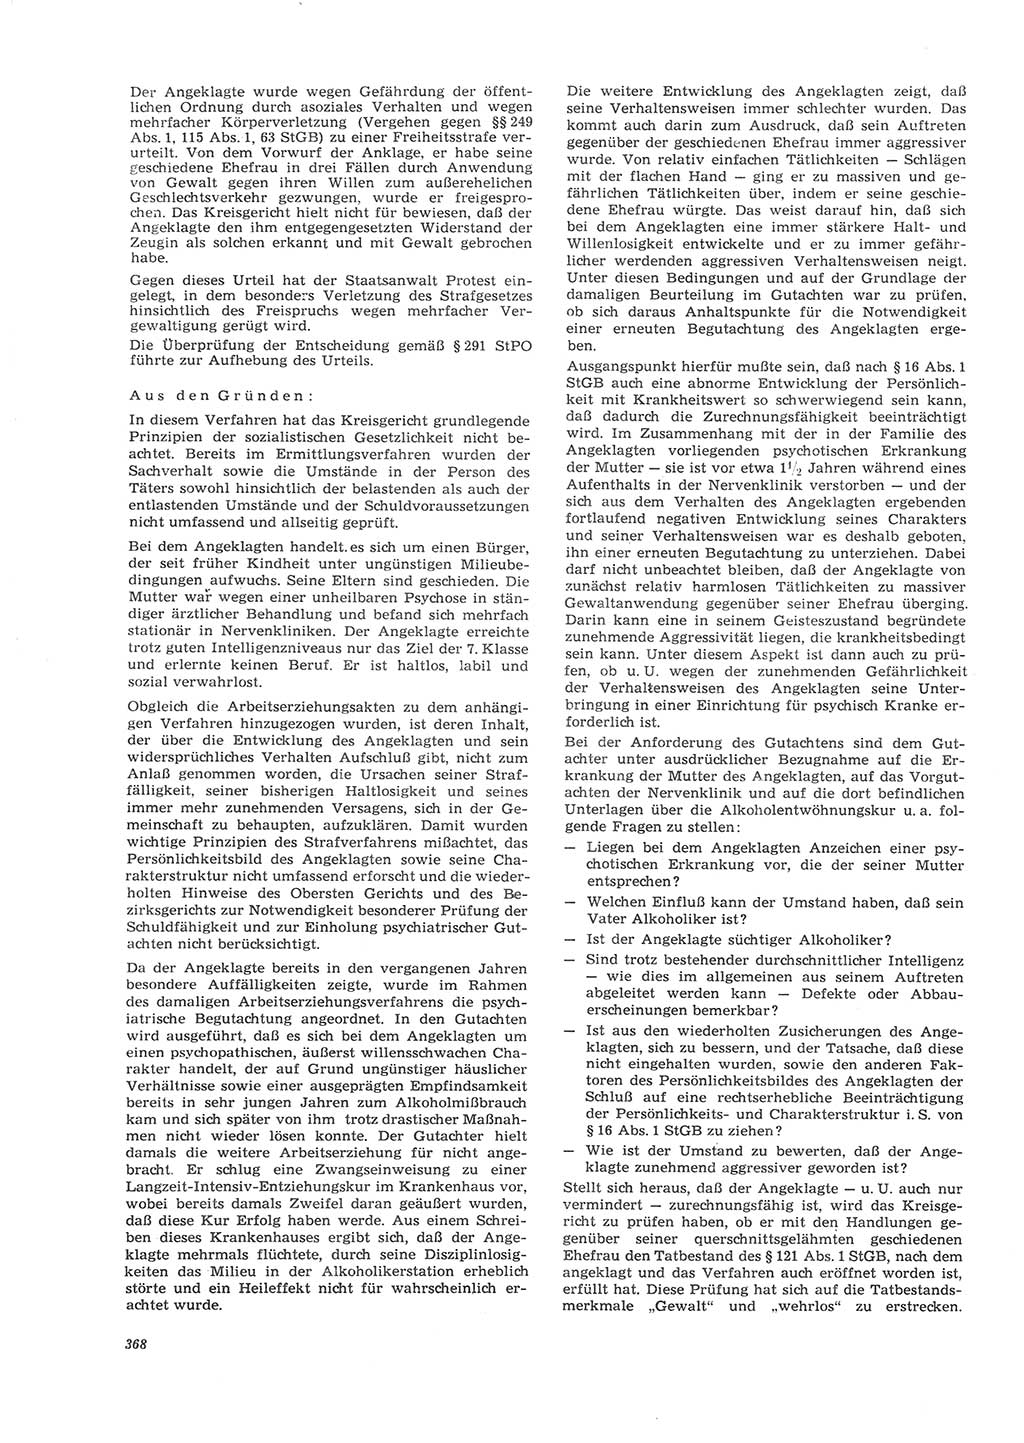 Neue Justiz (NJ), Zeitschrift für Recht und Rechtswissenschaft [Deutsche Demokratische Republik (DDR)], 26. Jahrgang 1972, Seite 368 (NJ DDR 1972, S. 368)